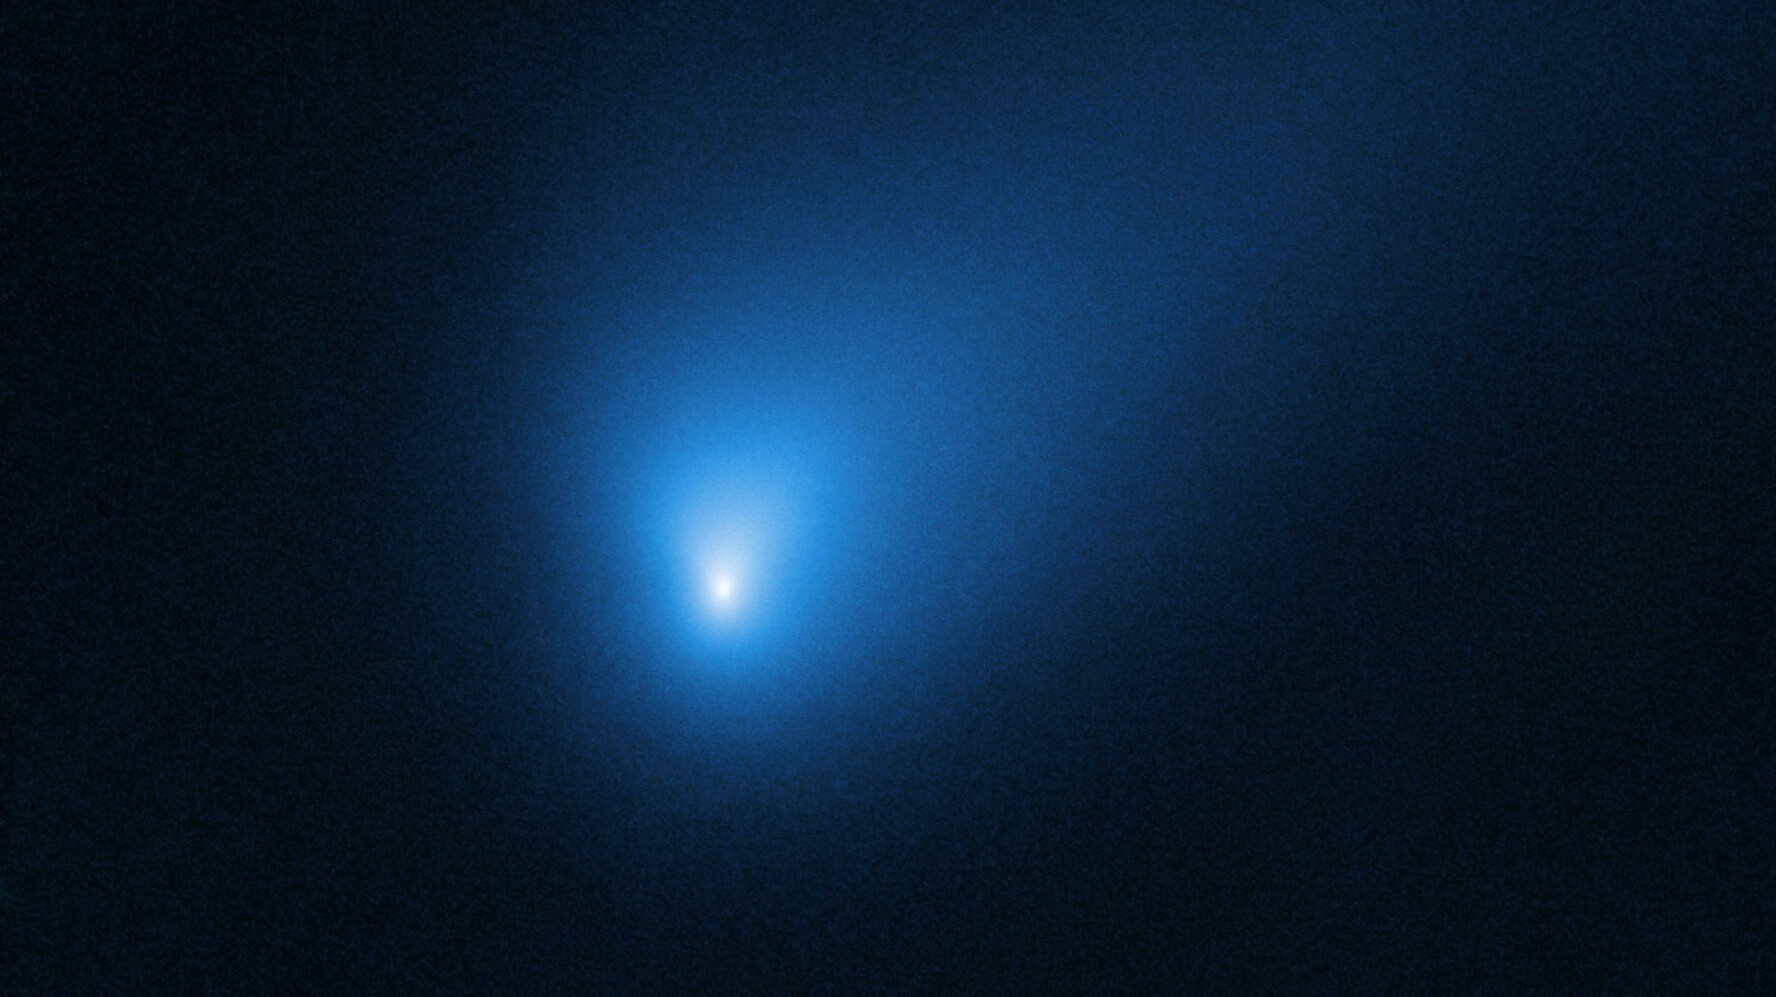 Une photographie prise par Hubble de la comète Borisov. © Nasa, ESA, D. Jewitt (Ucla)